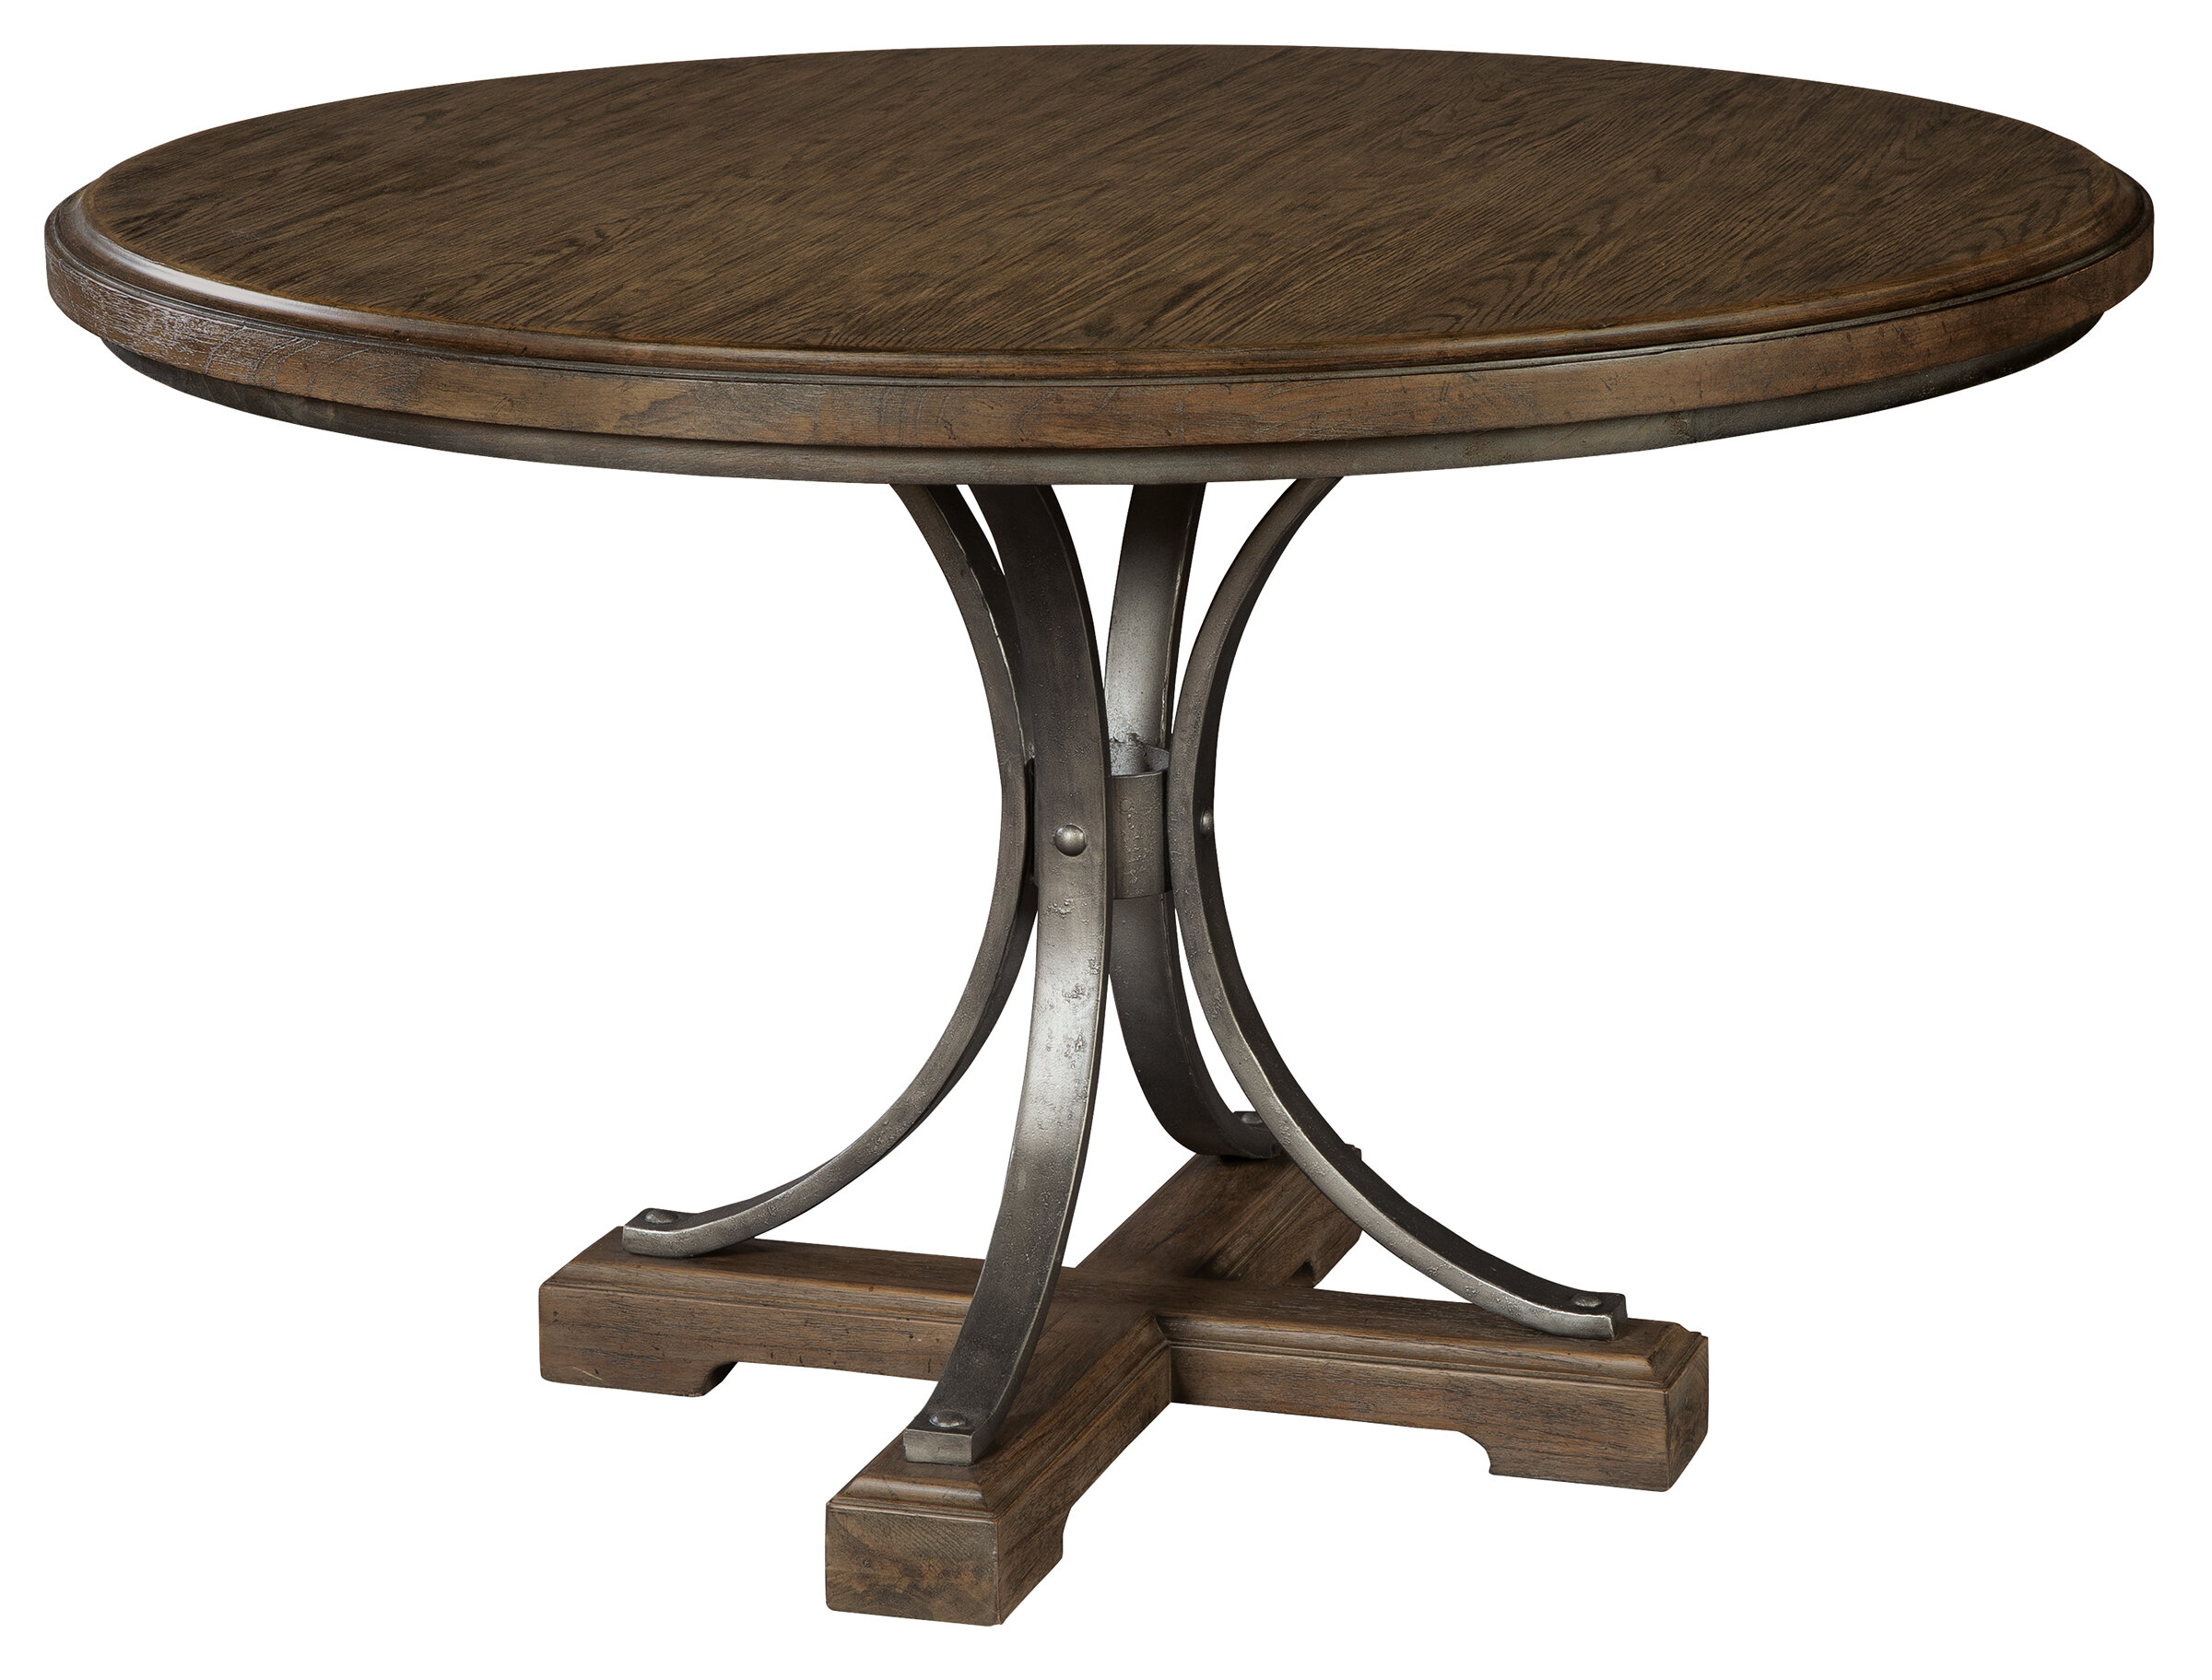 Details about   Oak pedestal dining room set 